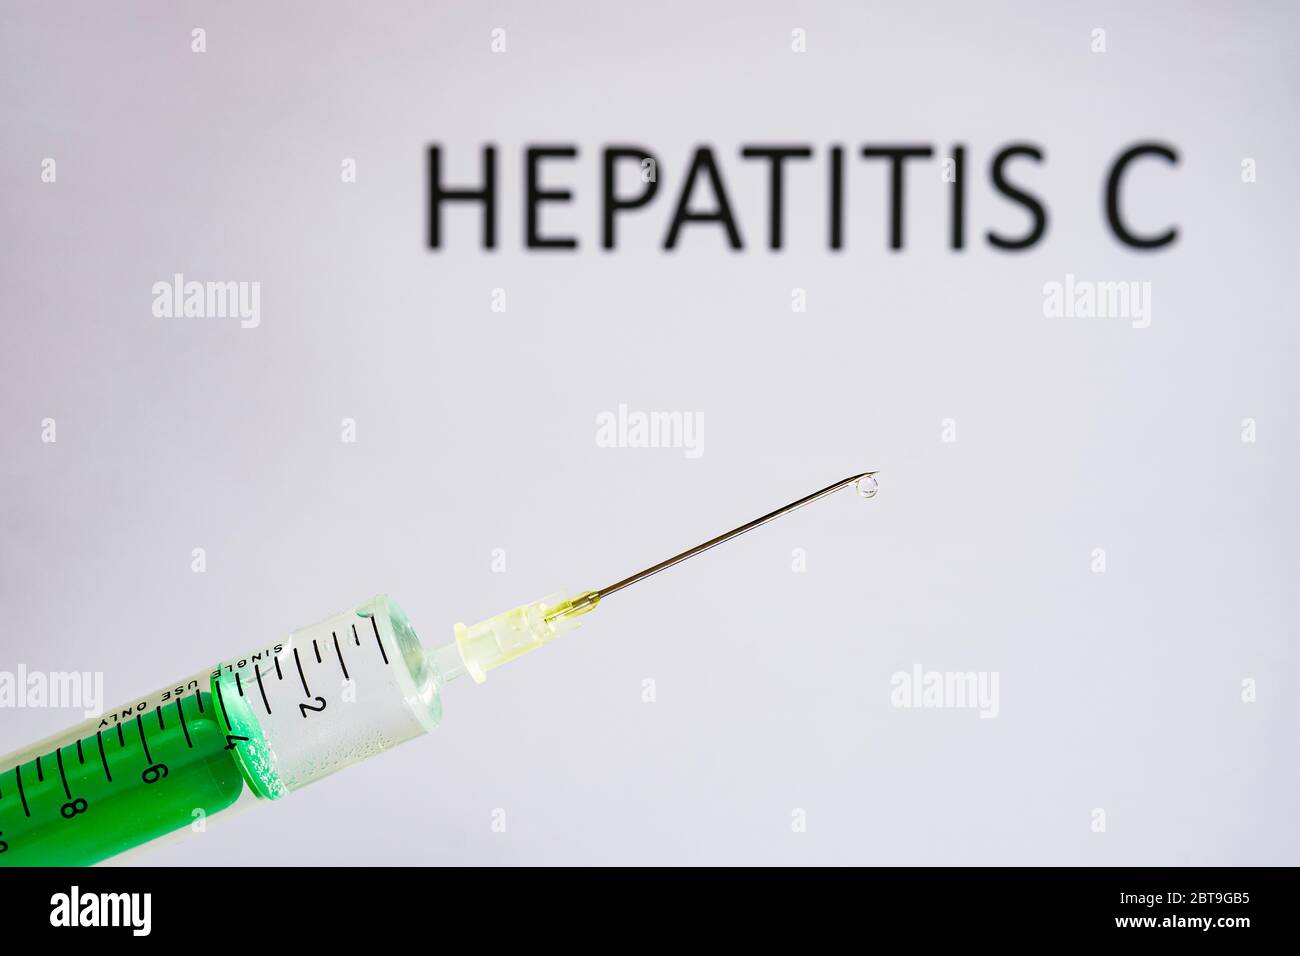 Questa figura mostra una siringa monouso con ago ipodermico, HEPATITIS C scritta su una lavagna bianca dietro Foto Stock